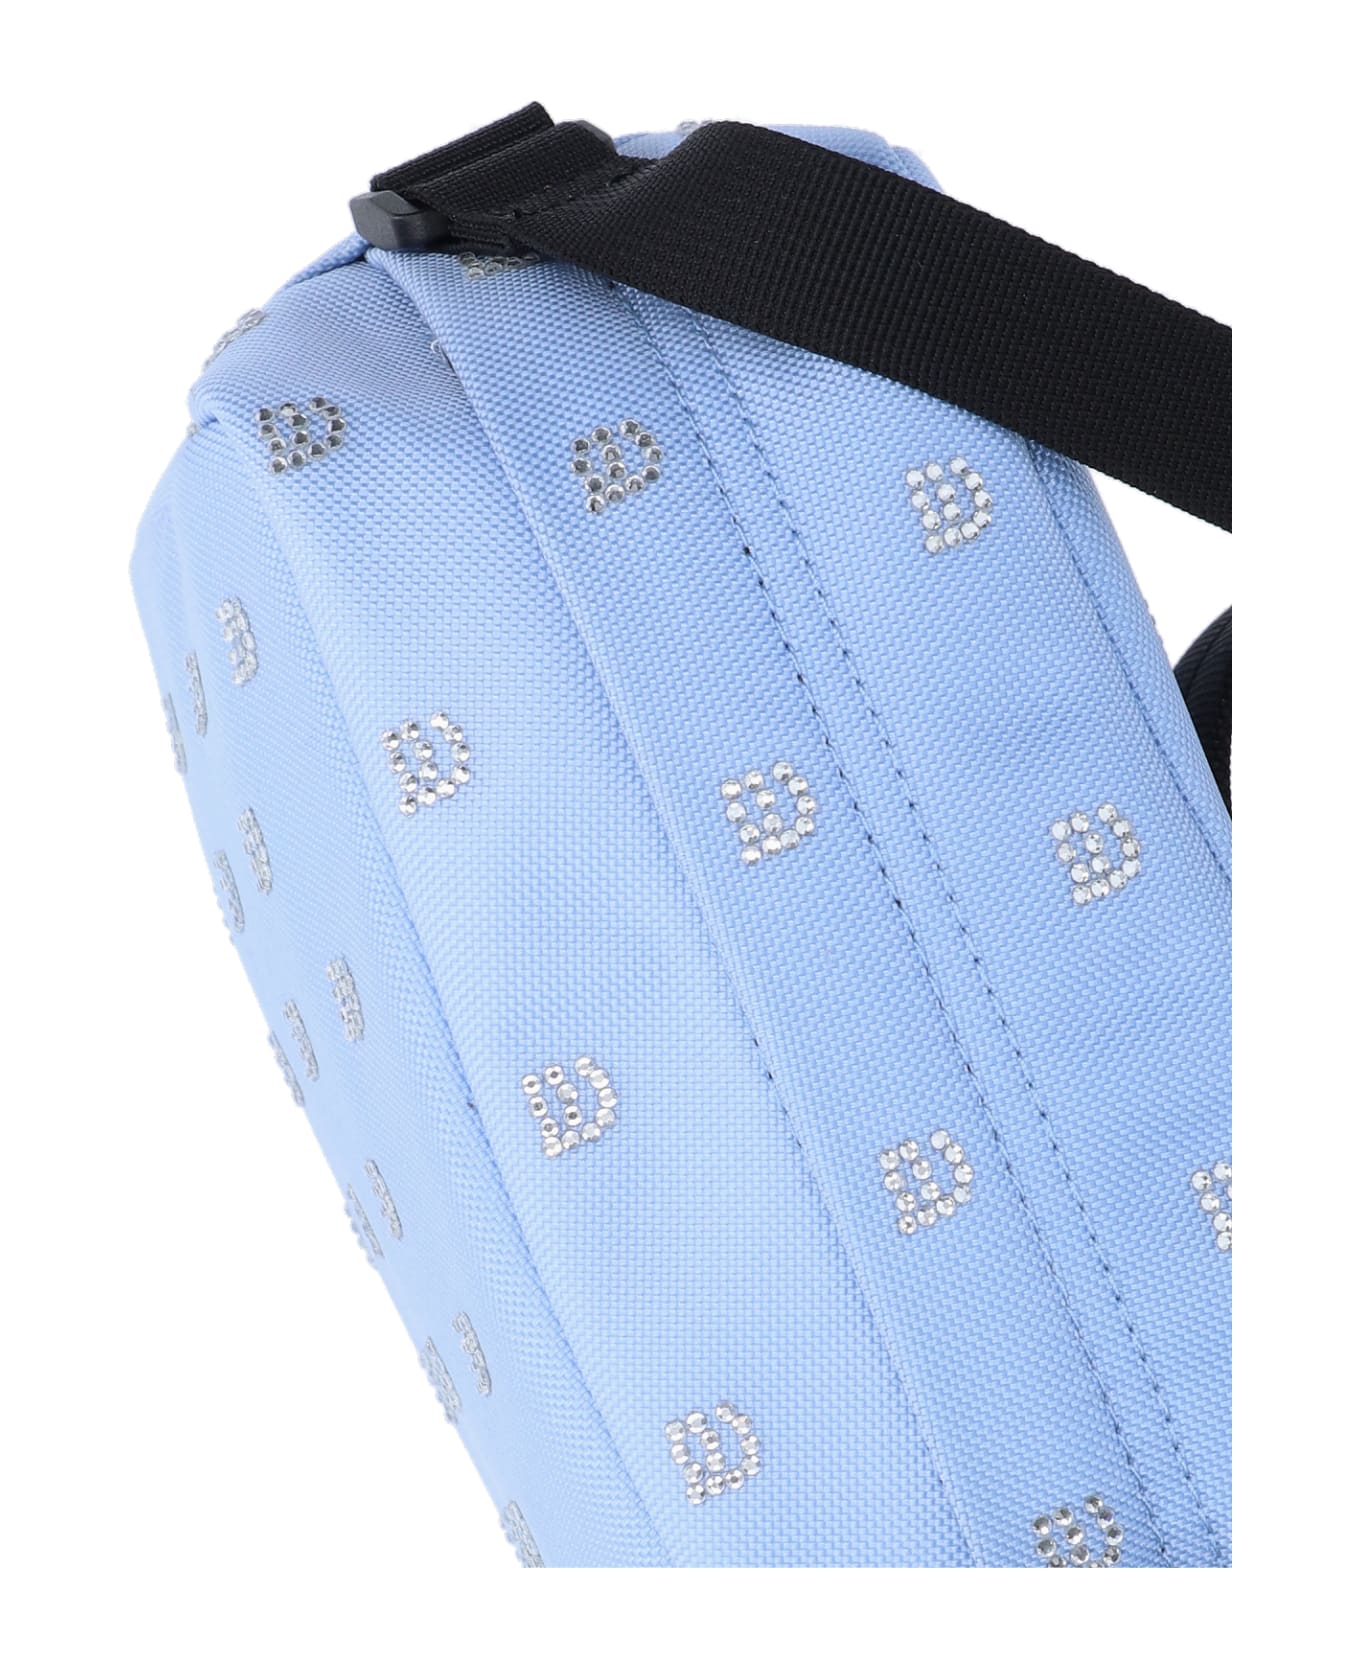 Alexander Wang 'wangsport' Crossbody Bag - Light Blue